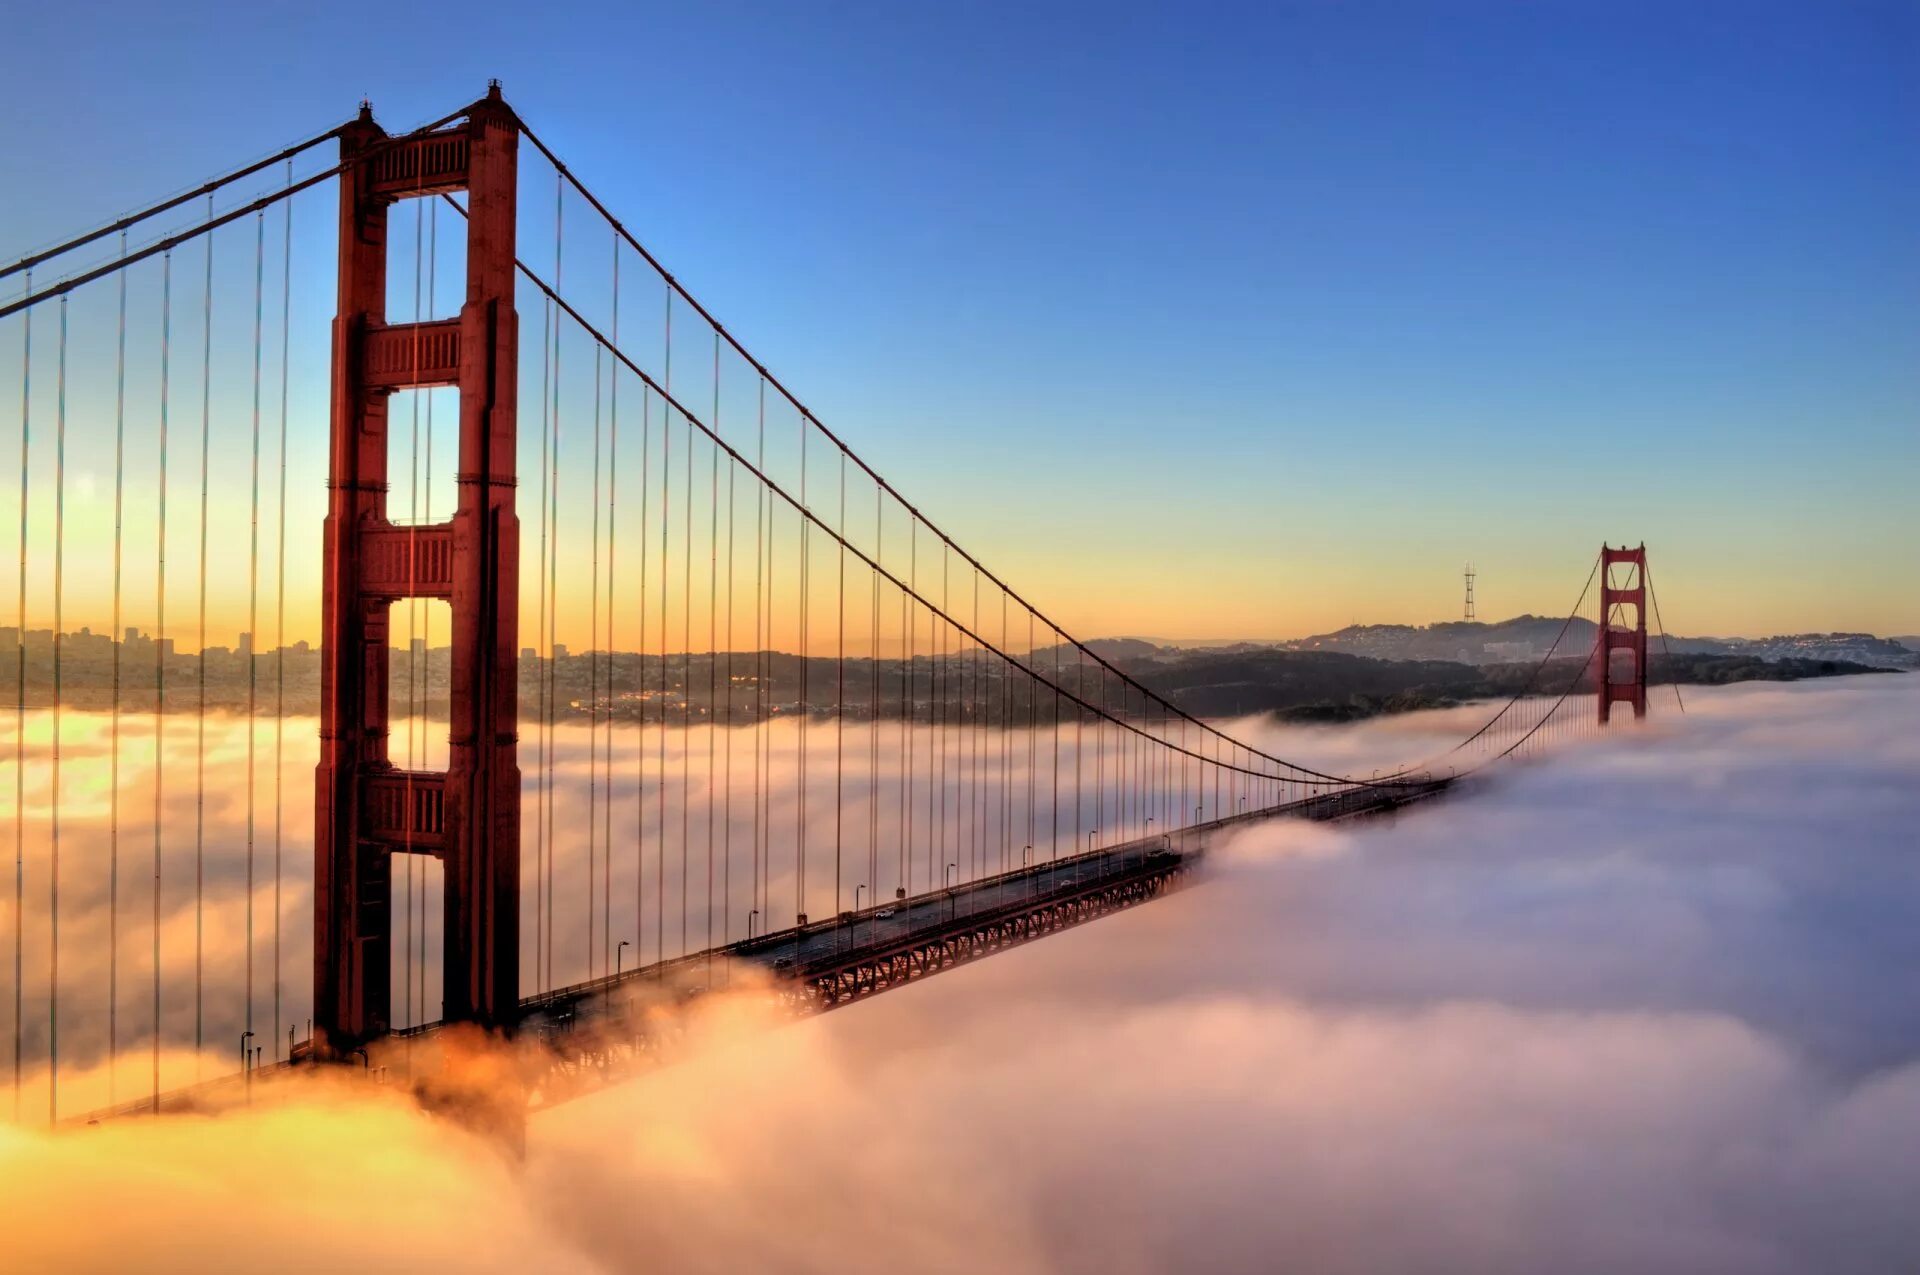 Бридж. Золотые ворота Сан-Франциско. Мост золотые ворота Сан-Франциско Калифорния. Мосты Golden Gate Bridge в Сан-Франциско. Голден гейт туман Сан-Франциско.